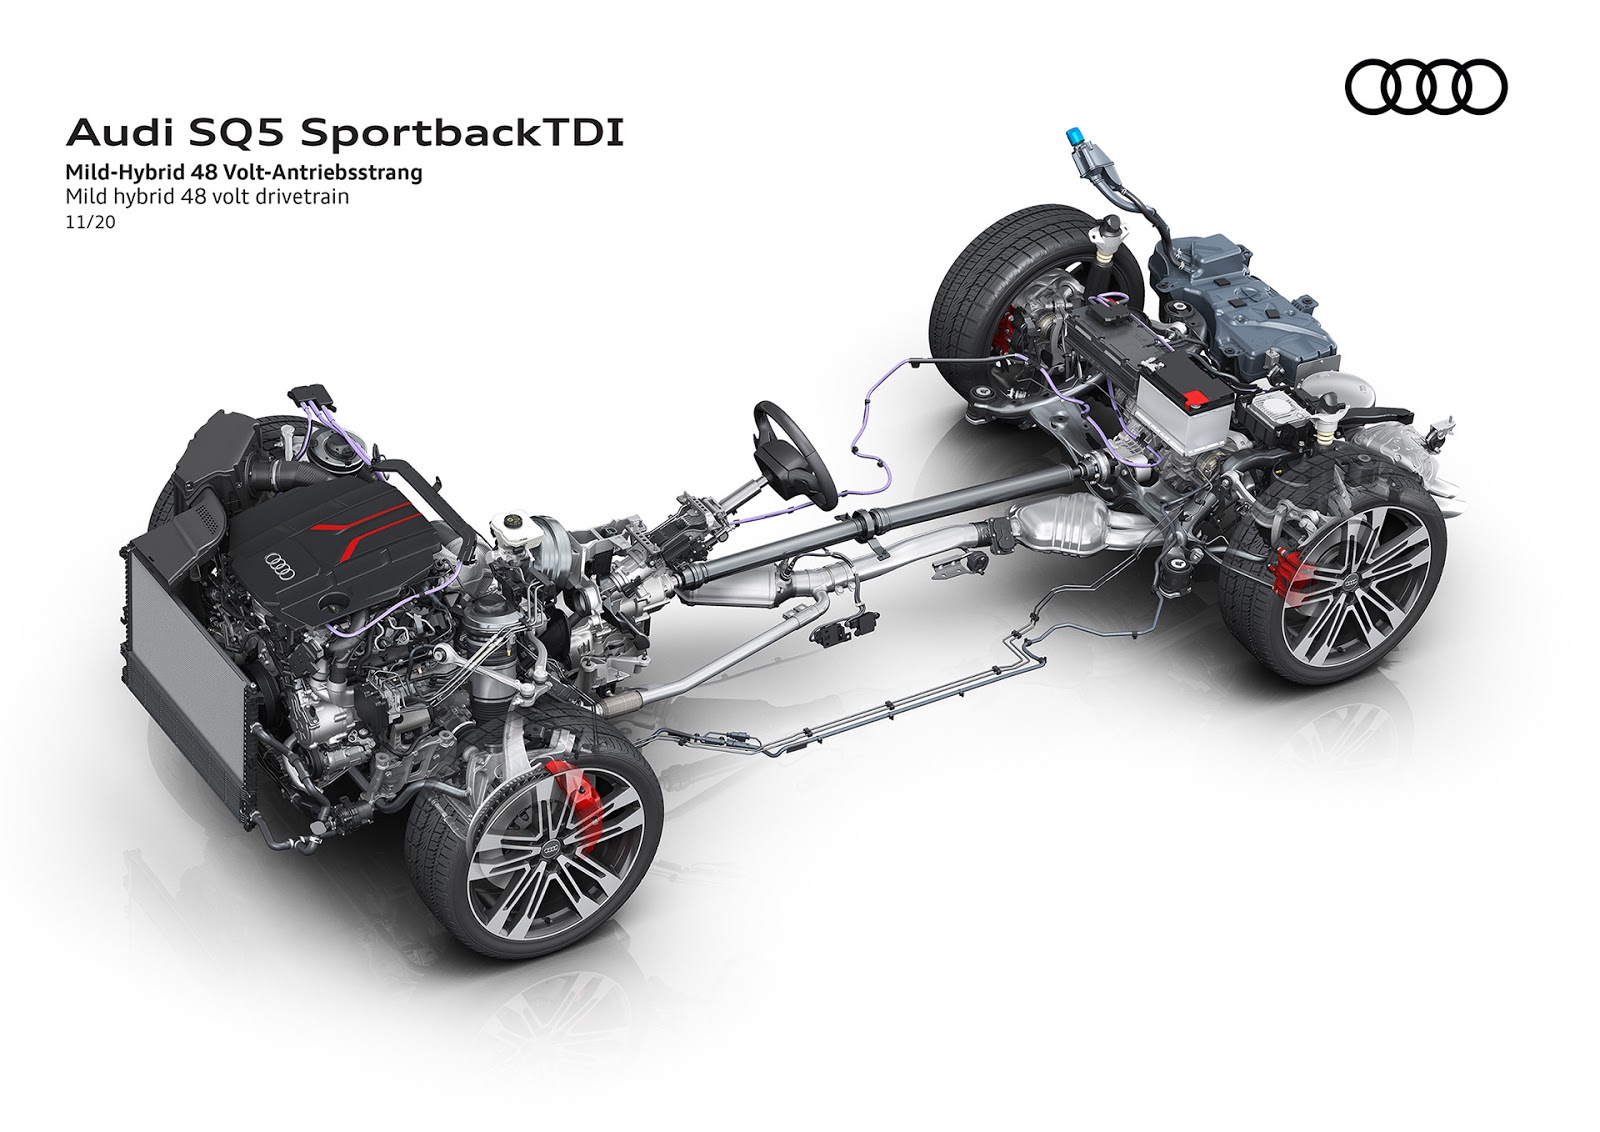 AUDI2BSQ52BSPORTBACK2BTDI 7 Audi SQ5 Sportback TDI: η σπορ έκδοση στην κορυφή της γκάμας του μοντέλου